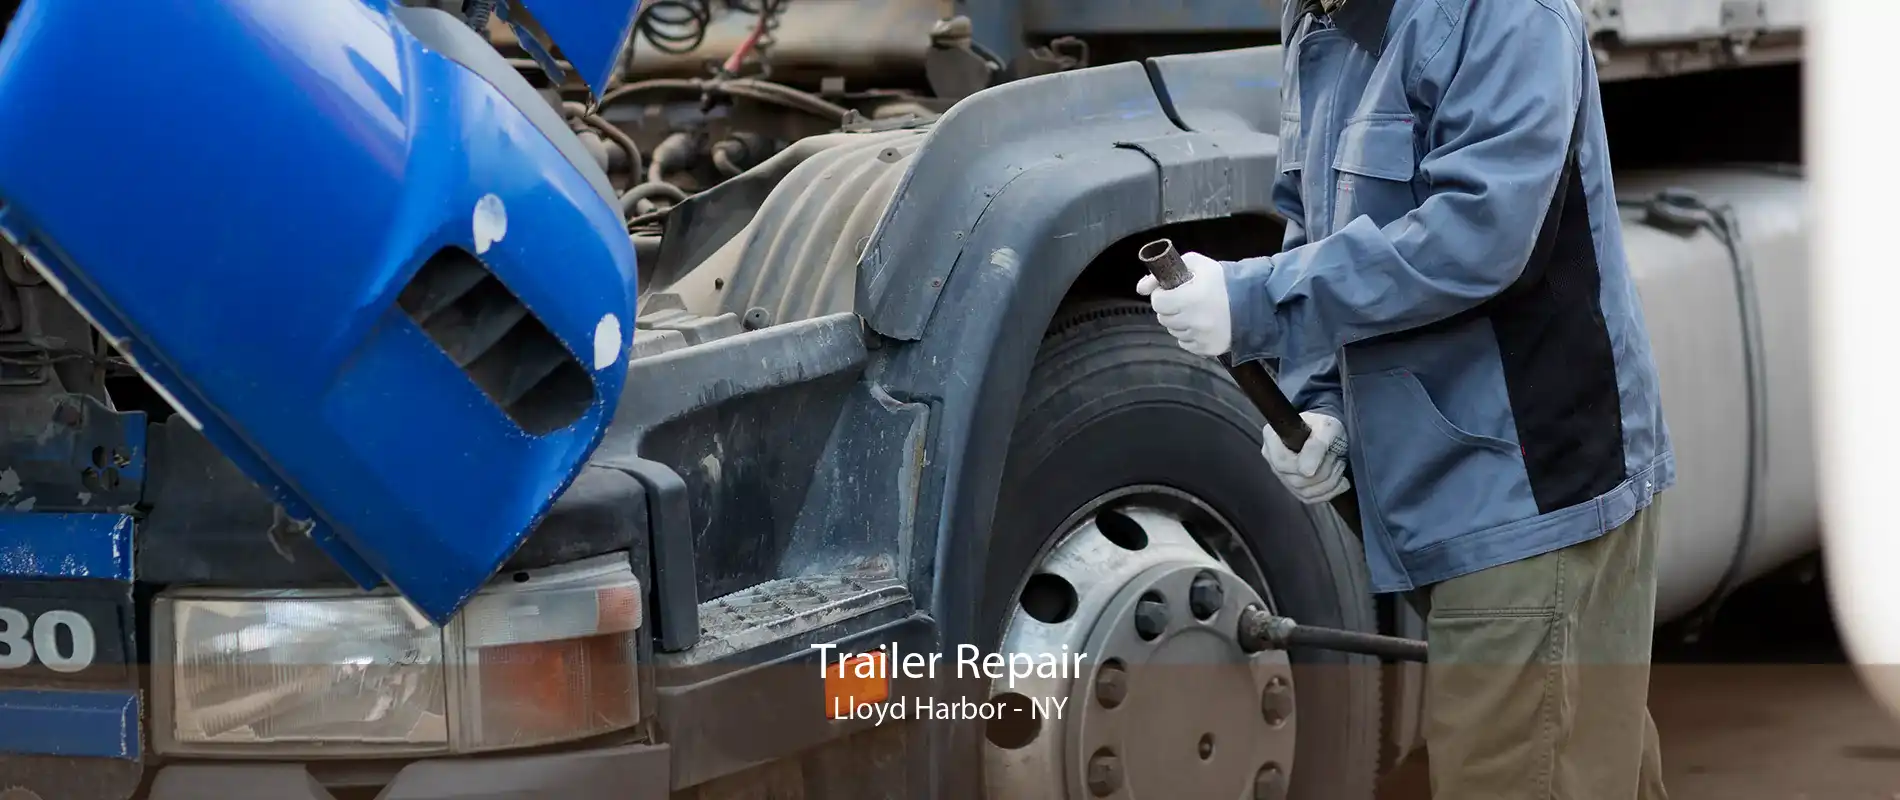 Trailer Repair Lloyd Harbor - NY